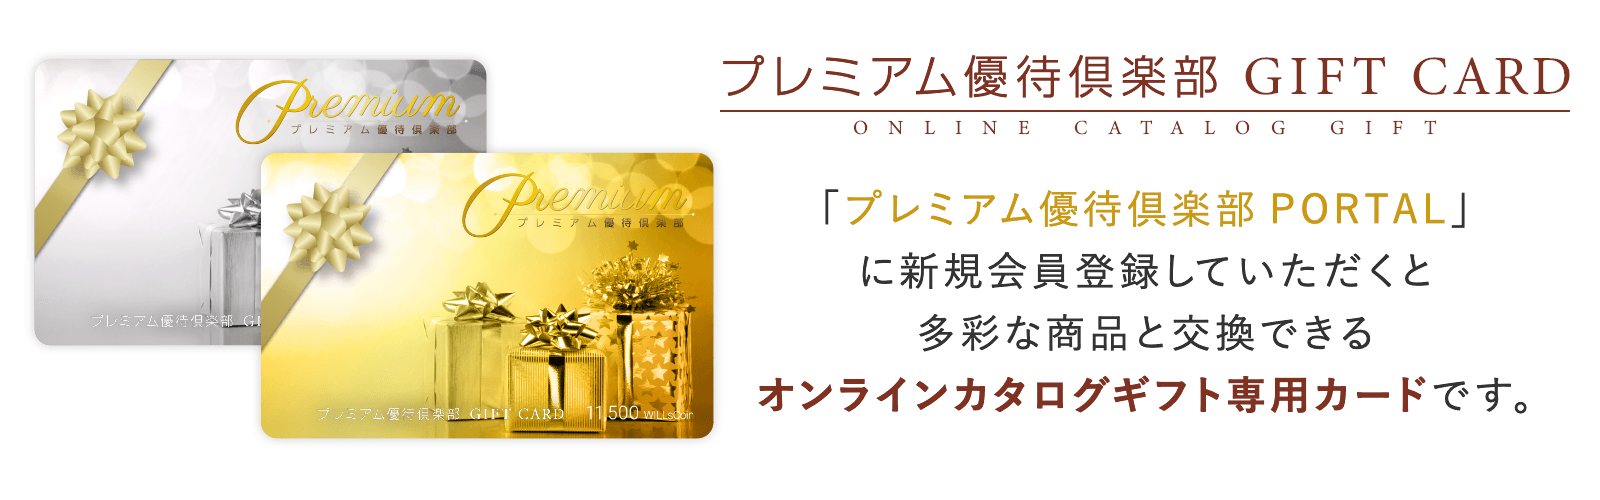 プレミアム優待倶楽部 GIFT CARD 「プレミアム優待倶楽部PORTAL」に新規会員登録していただくと多彩な商品と交換できる オンラインカタログギフト専用カードです。